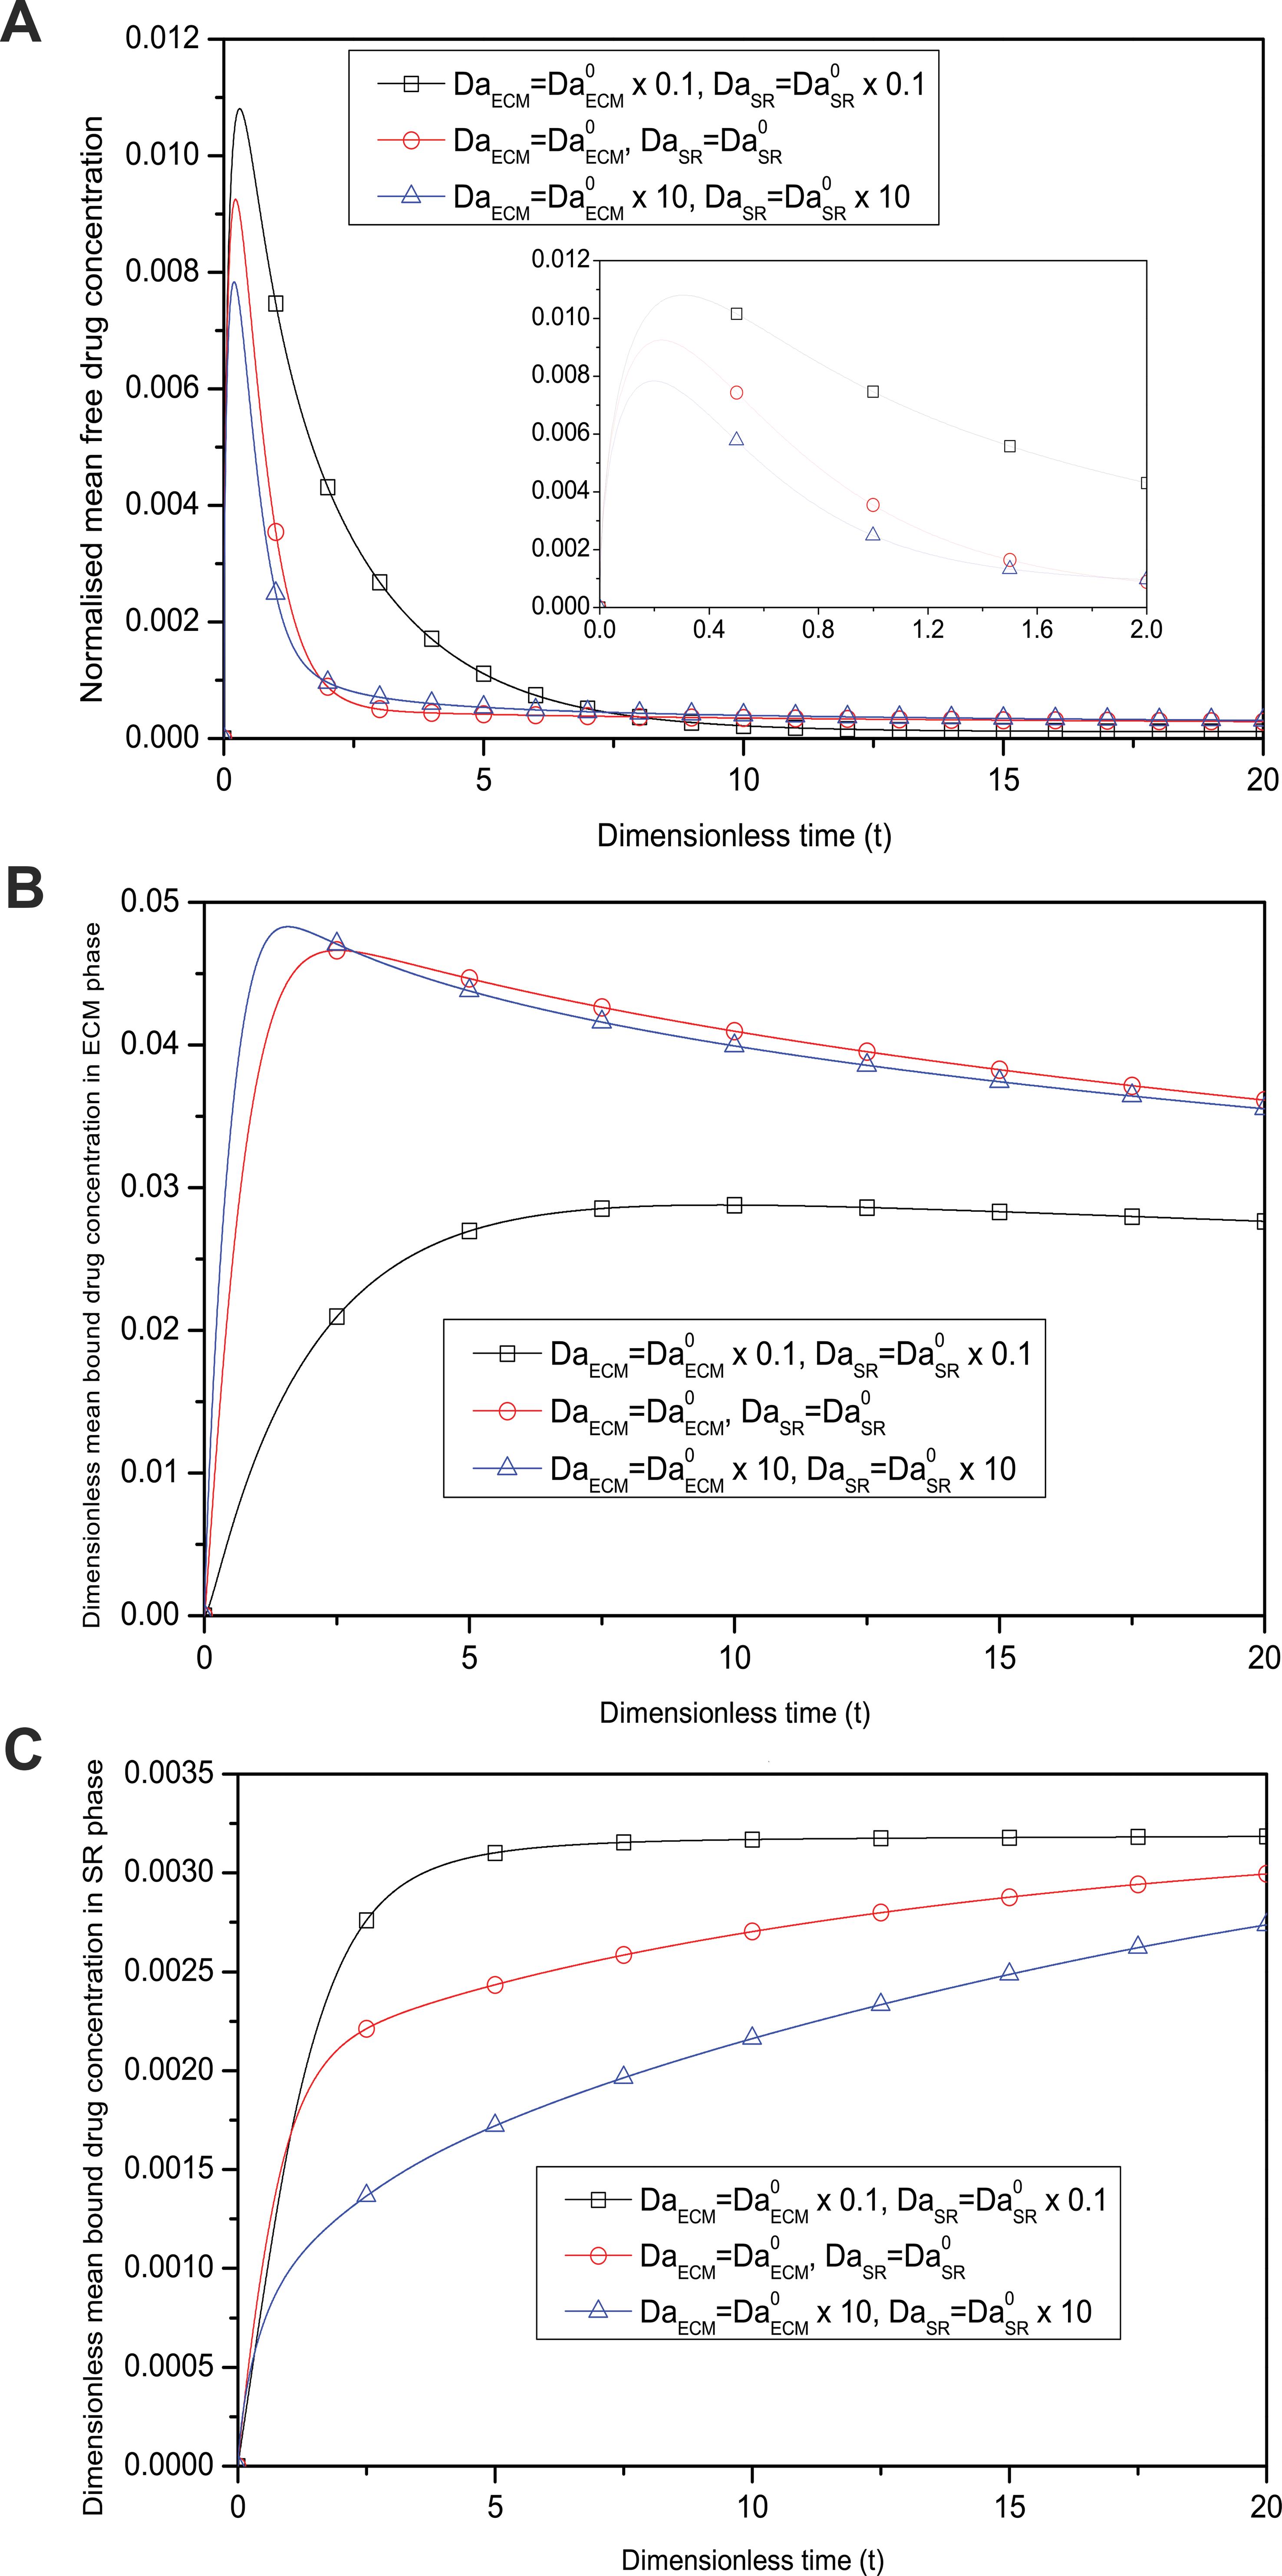 Temporal variation of normalised mean drug concentration for different Damköhler numbers.